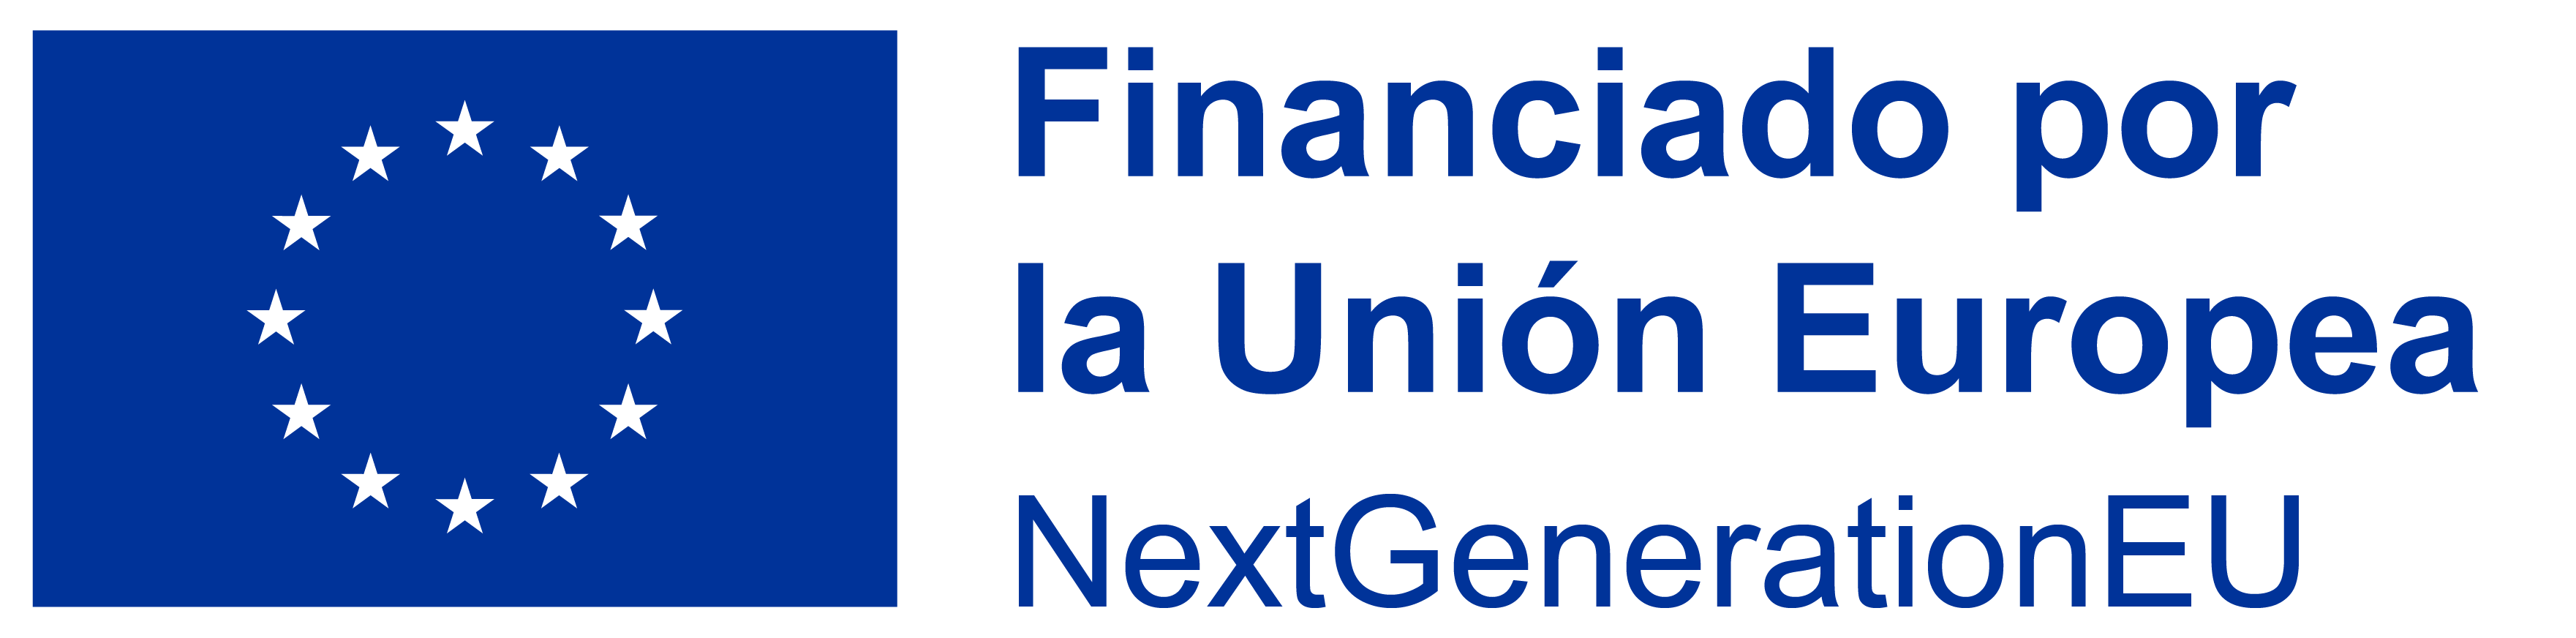 Logo financiado unión europea